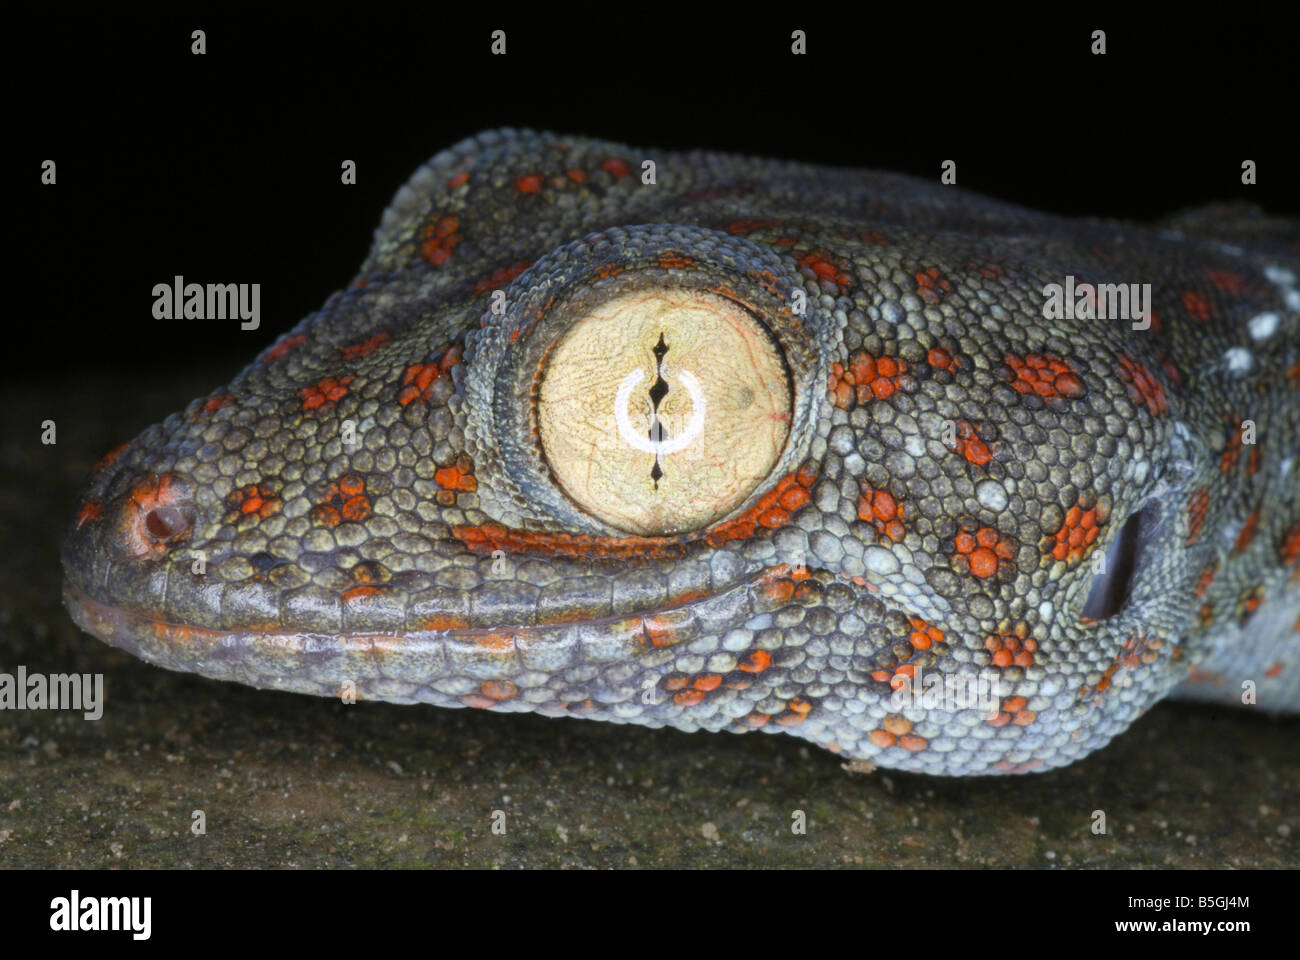 Tucktoo Gecko Kopf Nahaufnahme. Eine große arboreal Gecko, die häufig die Baumhöhlen Wohnraums angesehen werden. Assam. Indien Stockfoto